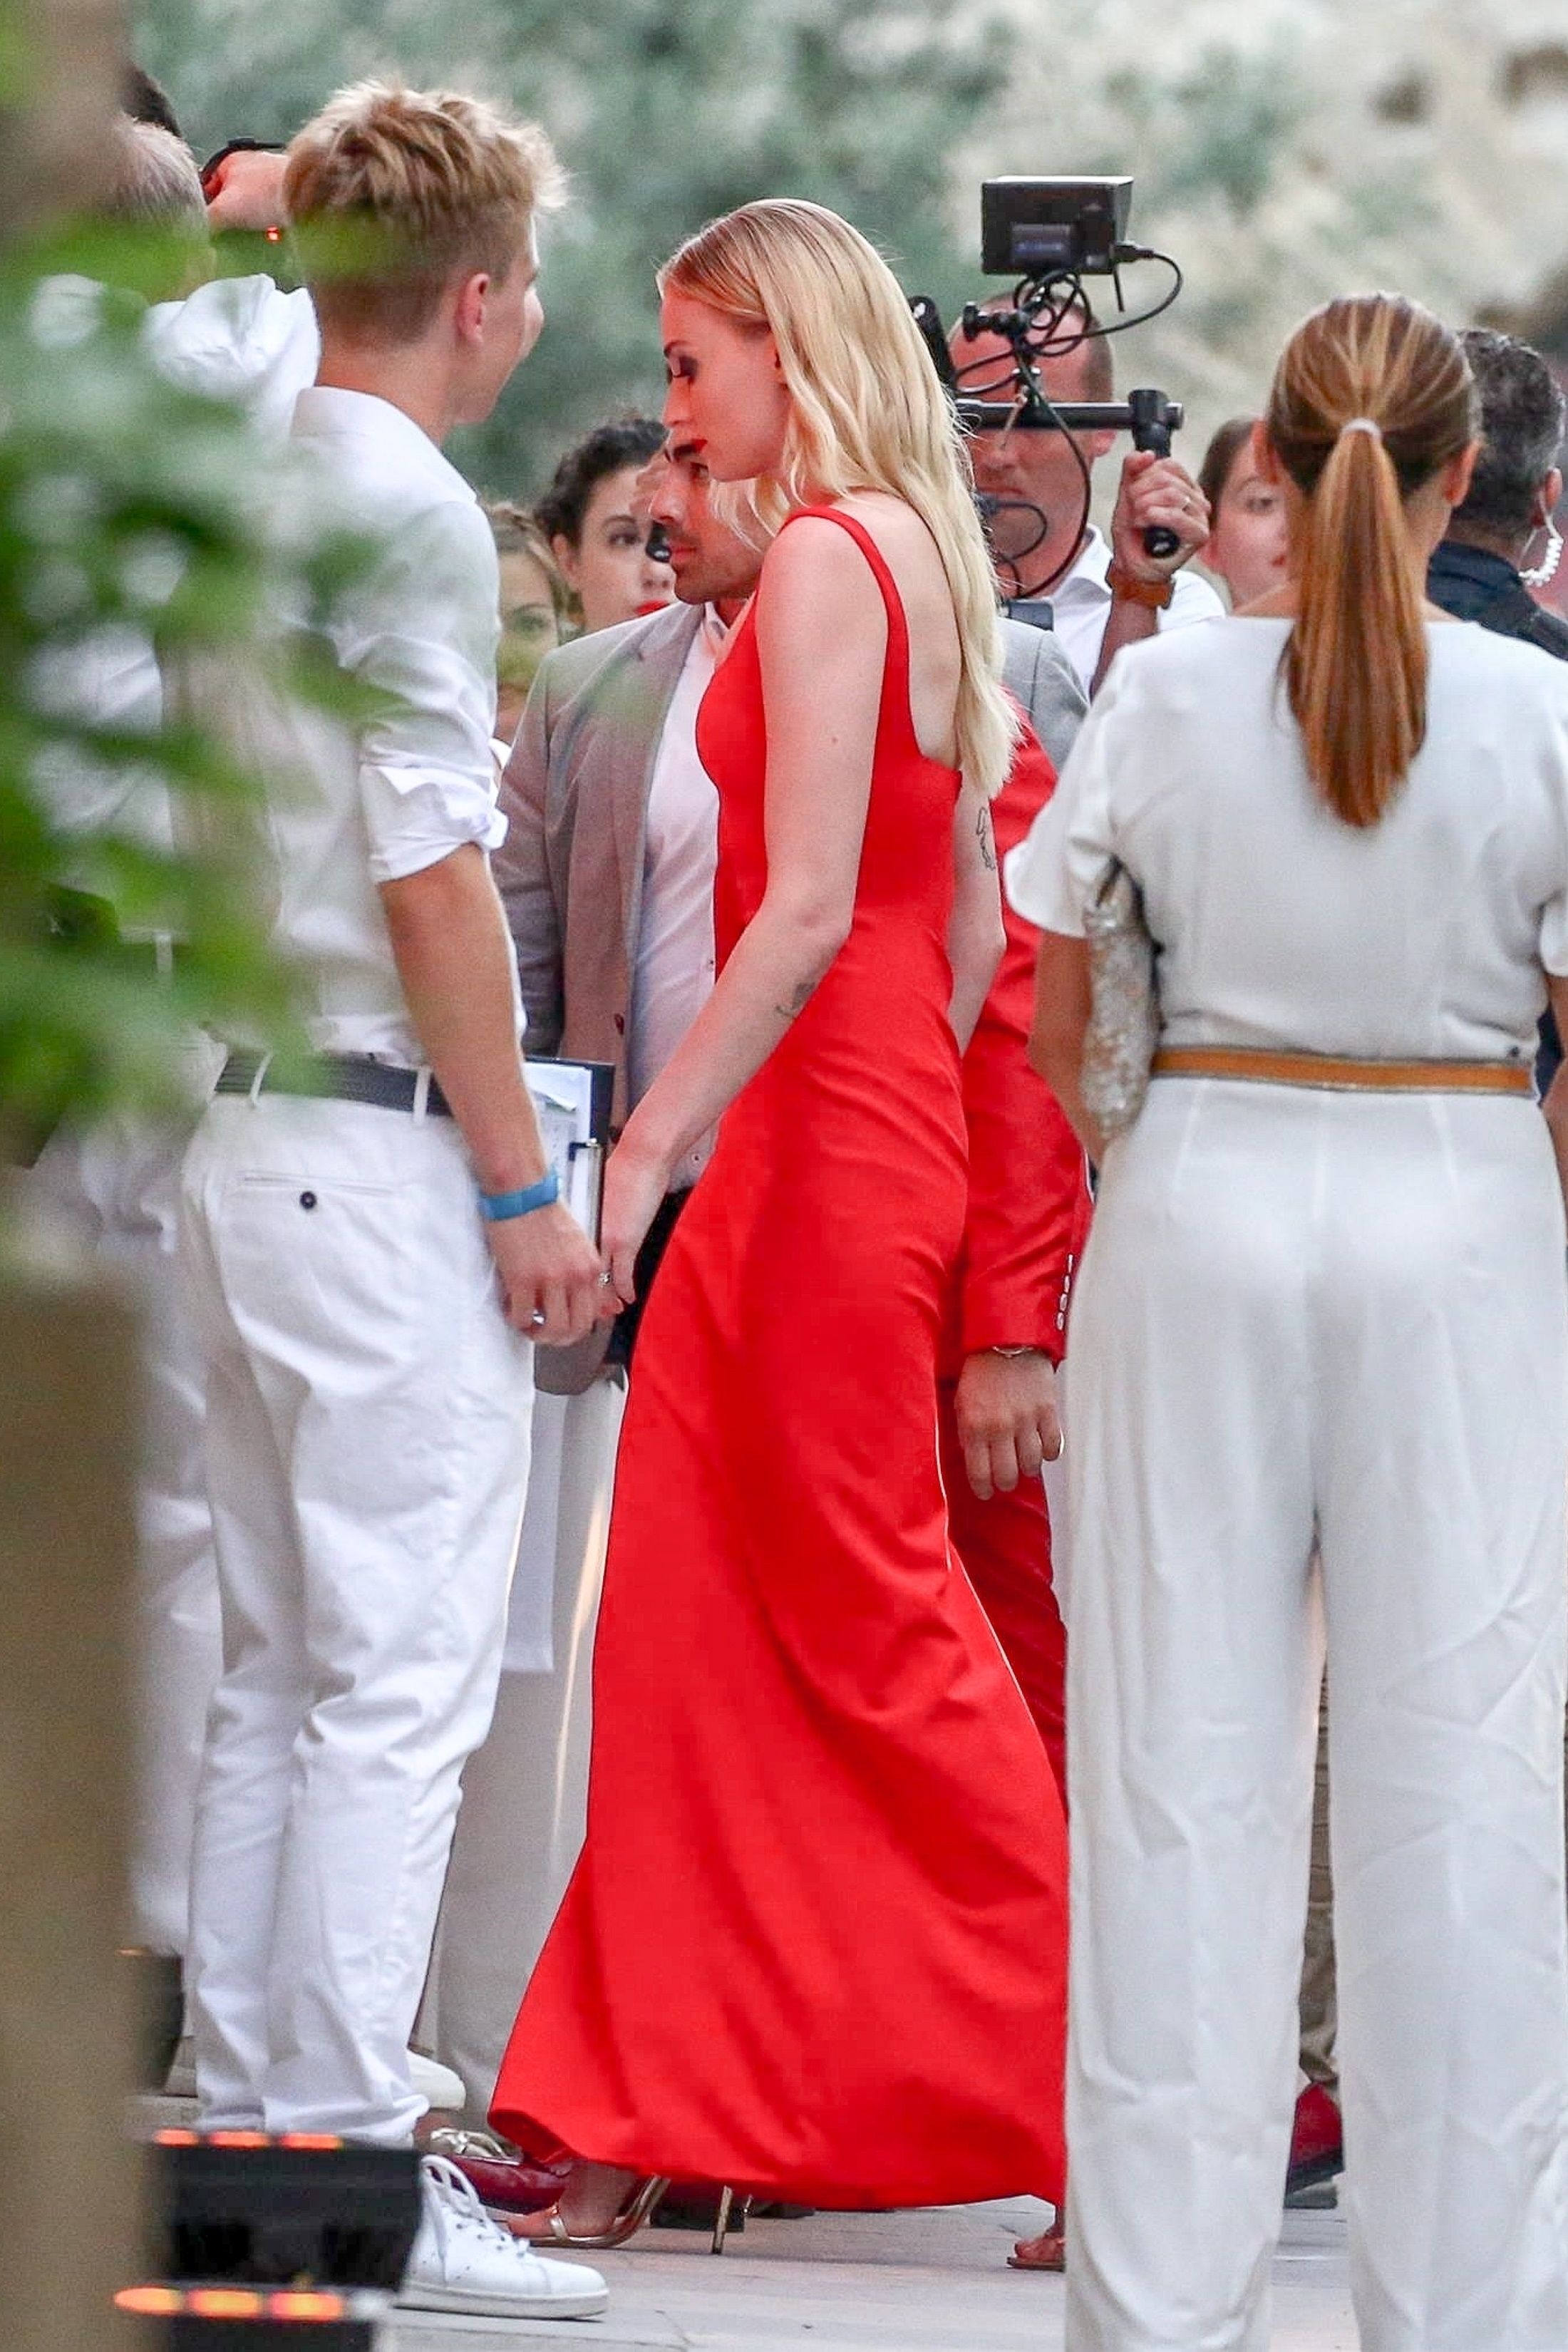 See Sophie Turner's Pre-Wedding Party Dress - Sophie Wears Bridal Dress  With Joe Jonas